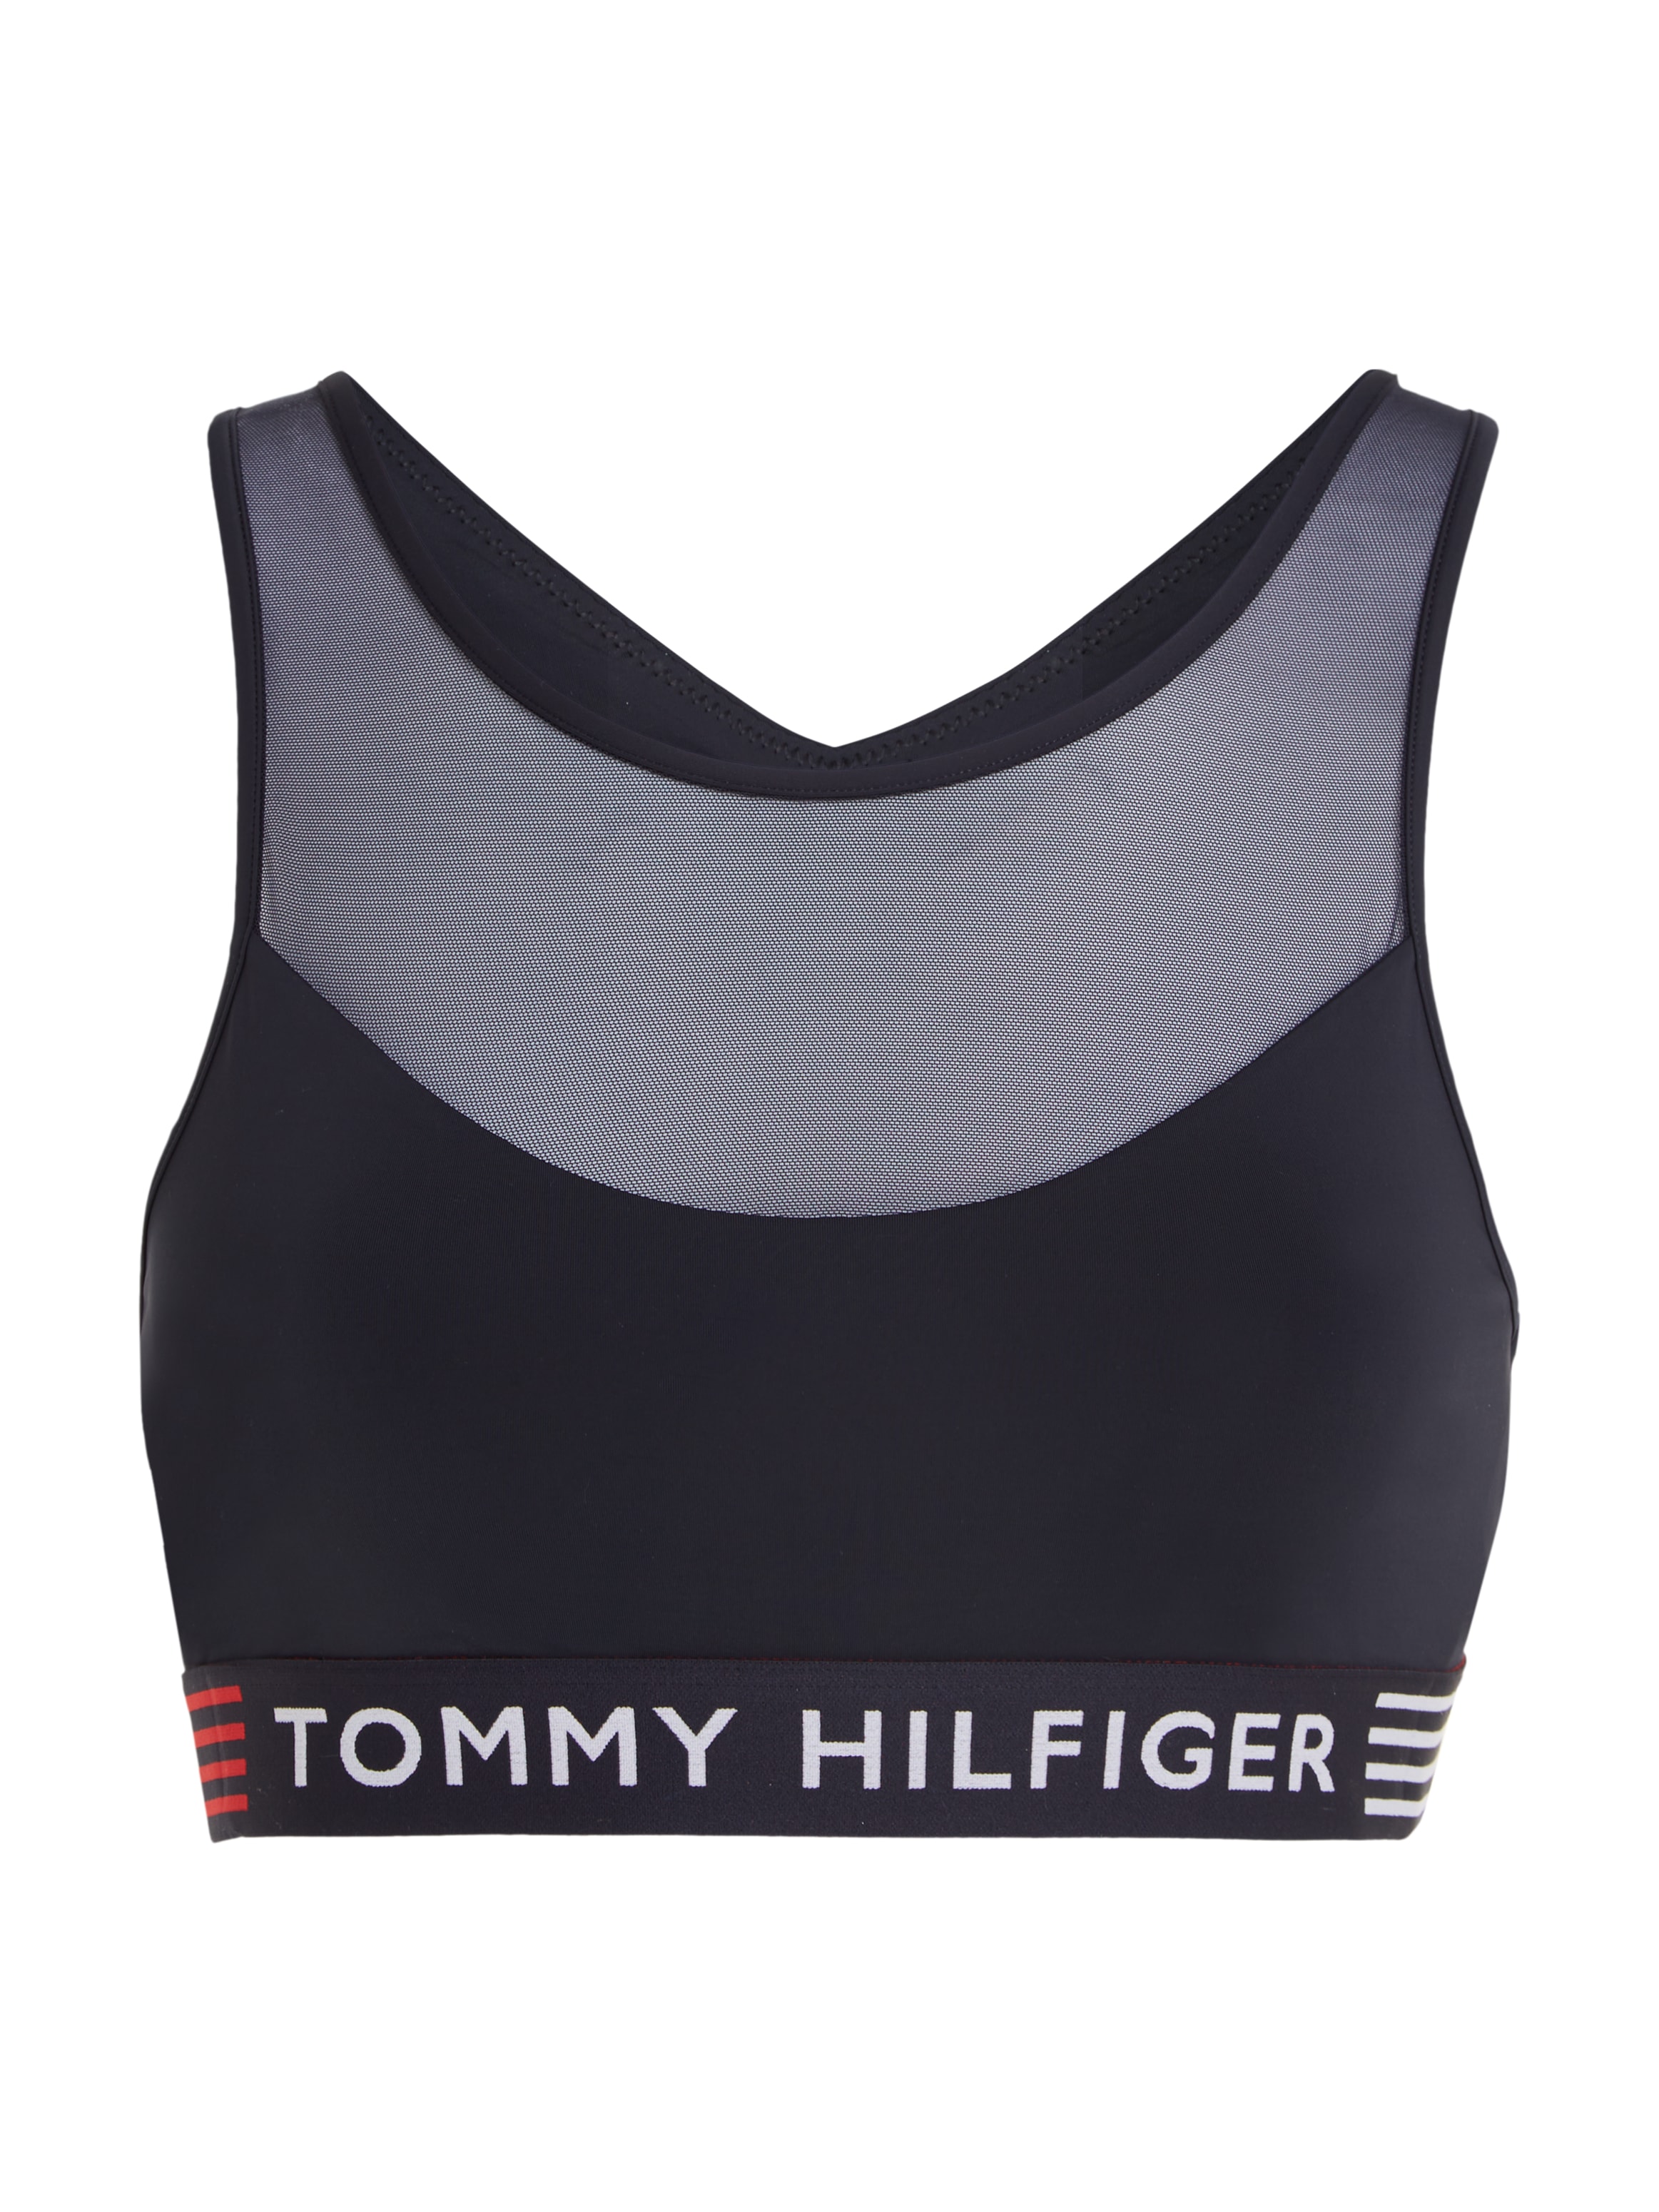 Tommy Hilfiger Underwear Bralette »UNLINED BRALETTE«, mit Mesh-Einsatz & Tommy Hilfiger Loo-Elastiktape